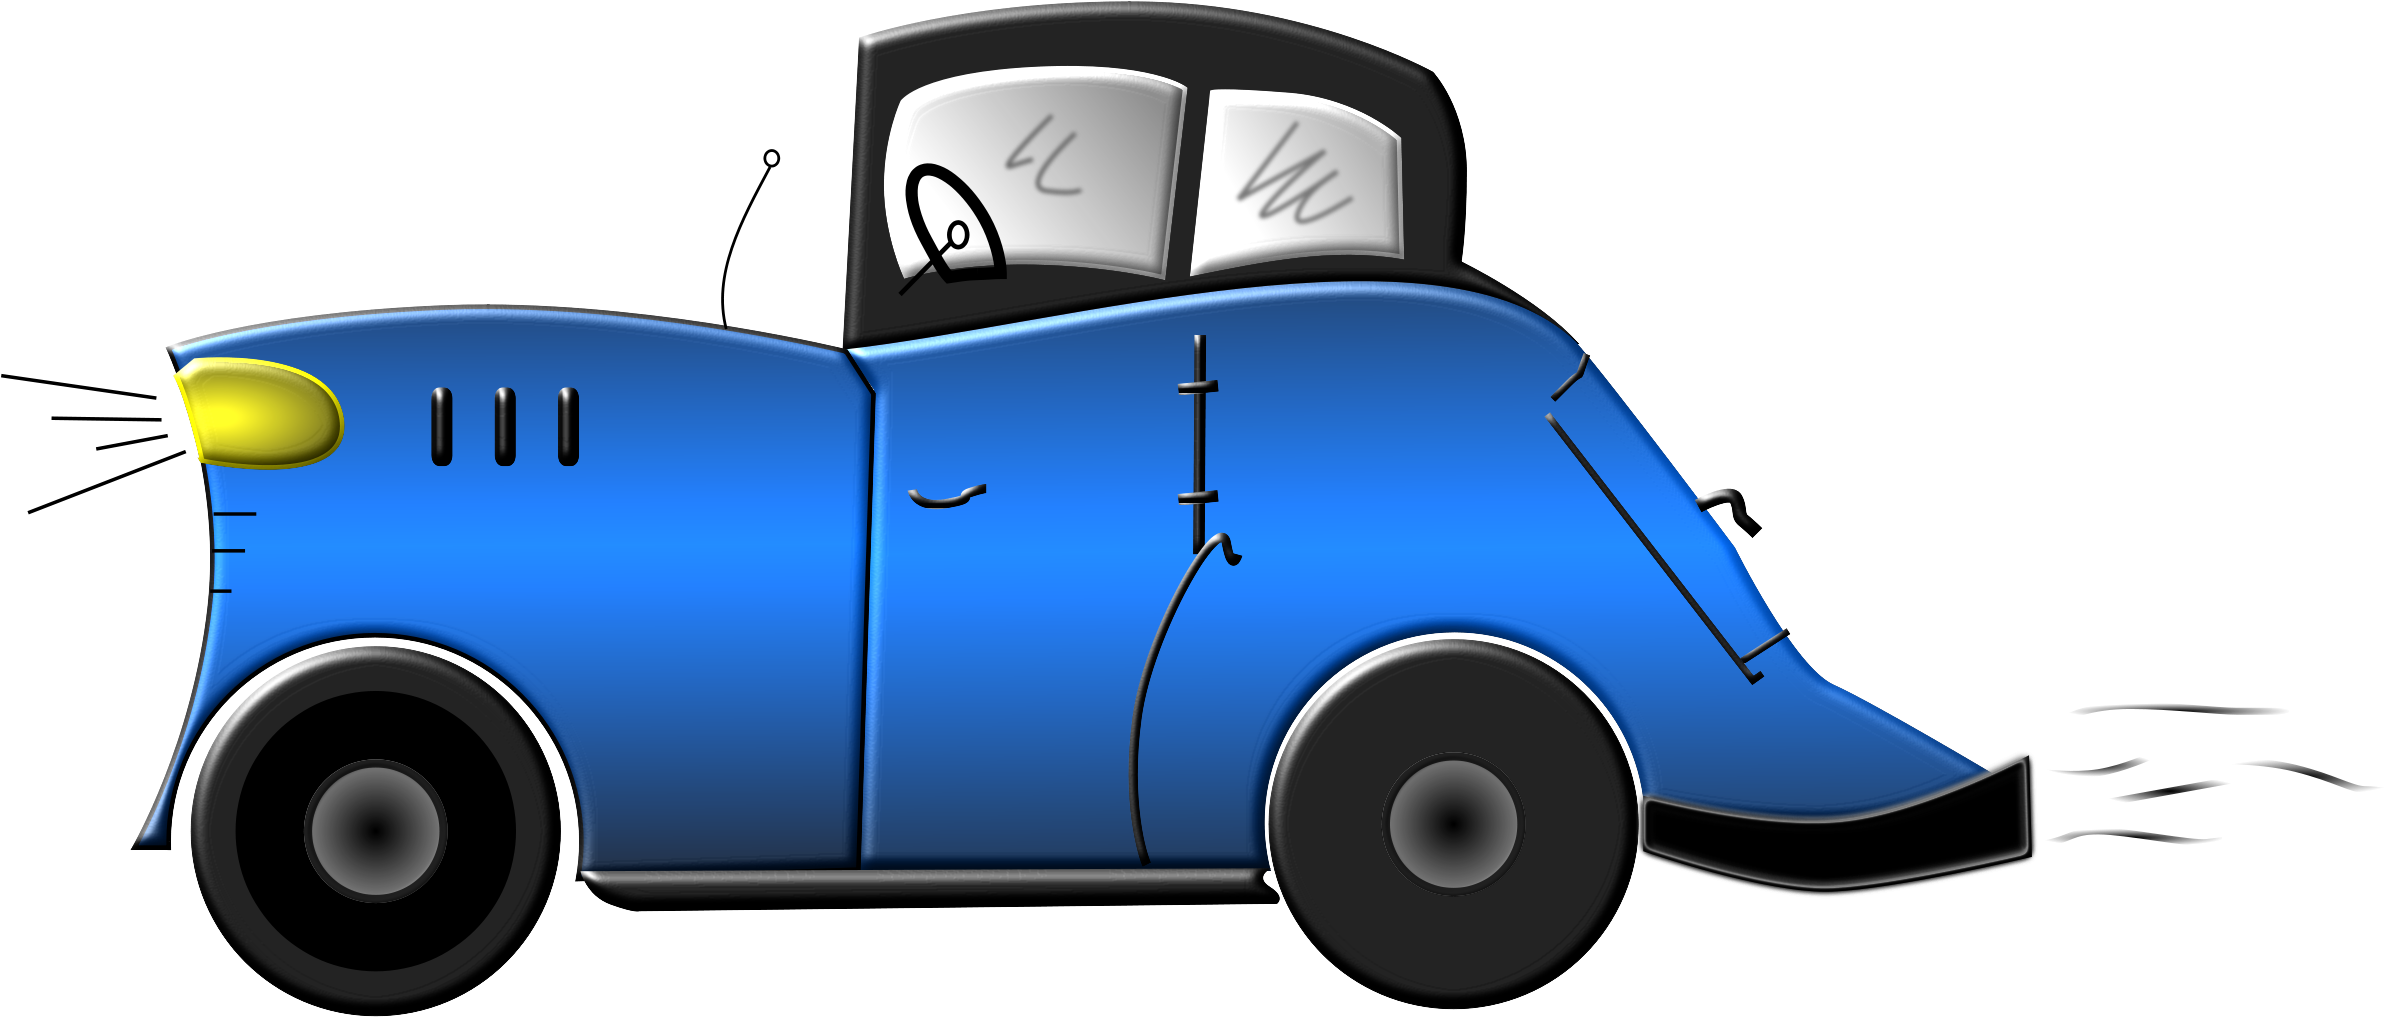 Blue Cartoon Cars - Cartoon Cars Transparent Png (2400x1050)